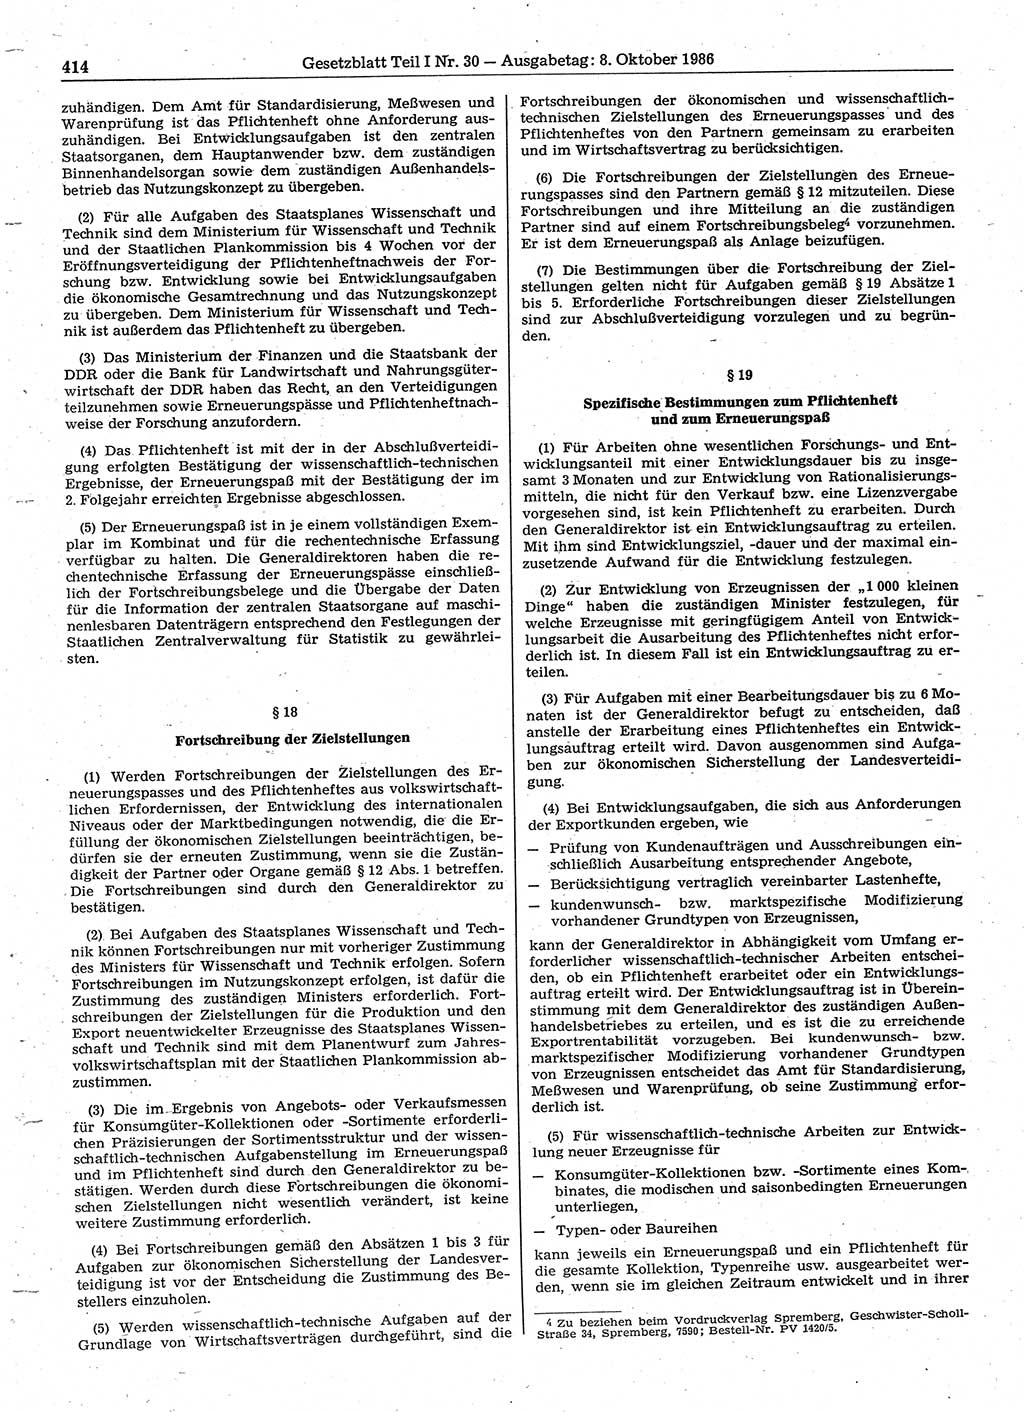 Gesetzblatt (GBl.) der Deutschen Demokratischen Republik (DDR) Teil Ⅰ 1986, Seite 414 (GBl. DDR Ⅰ 1986, S. 414)